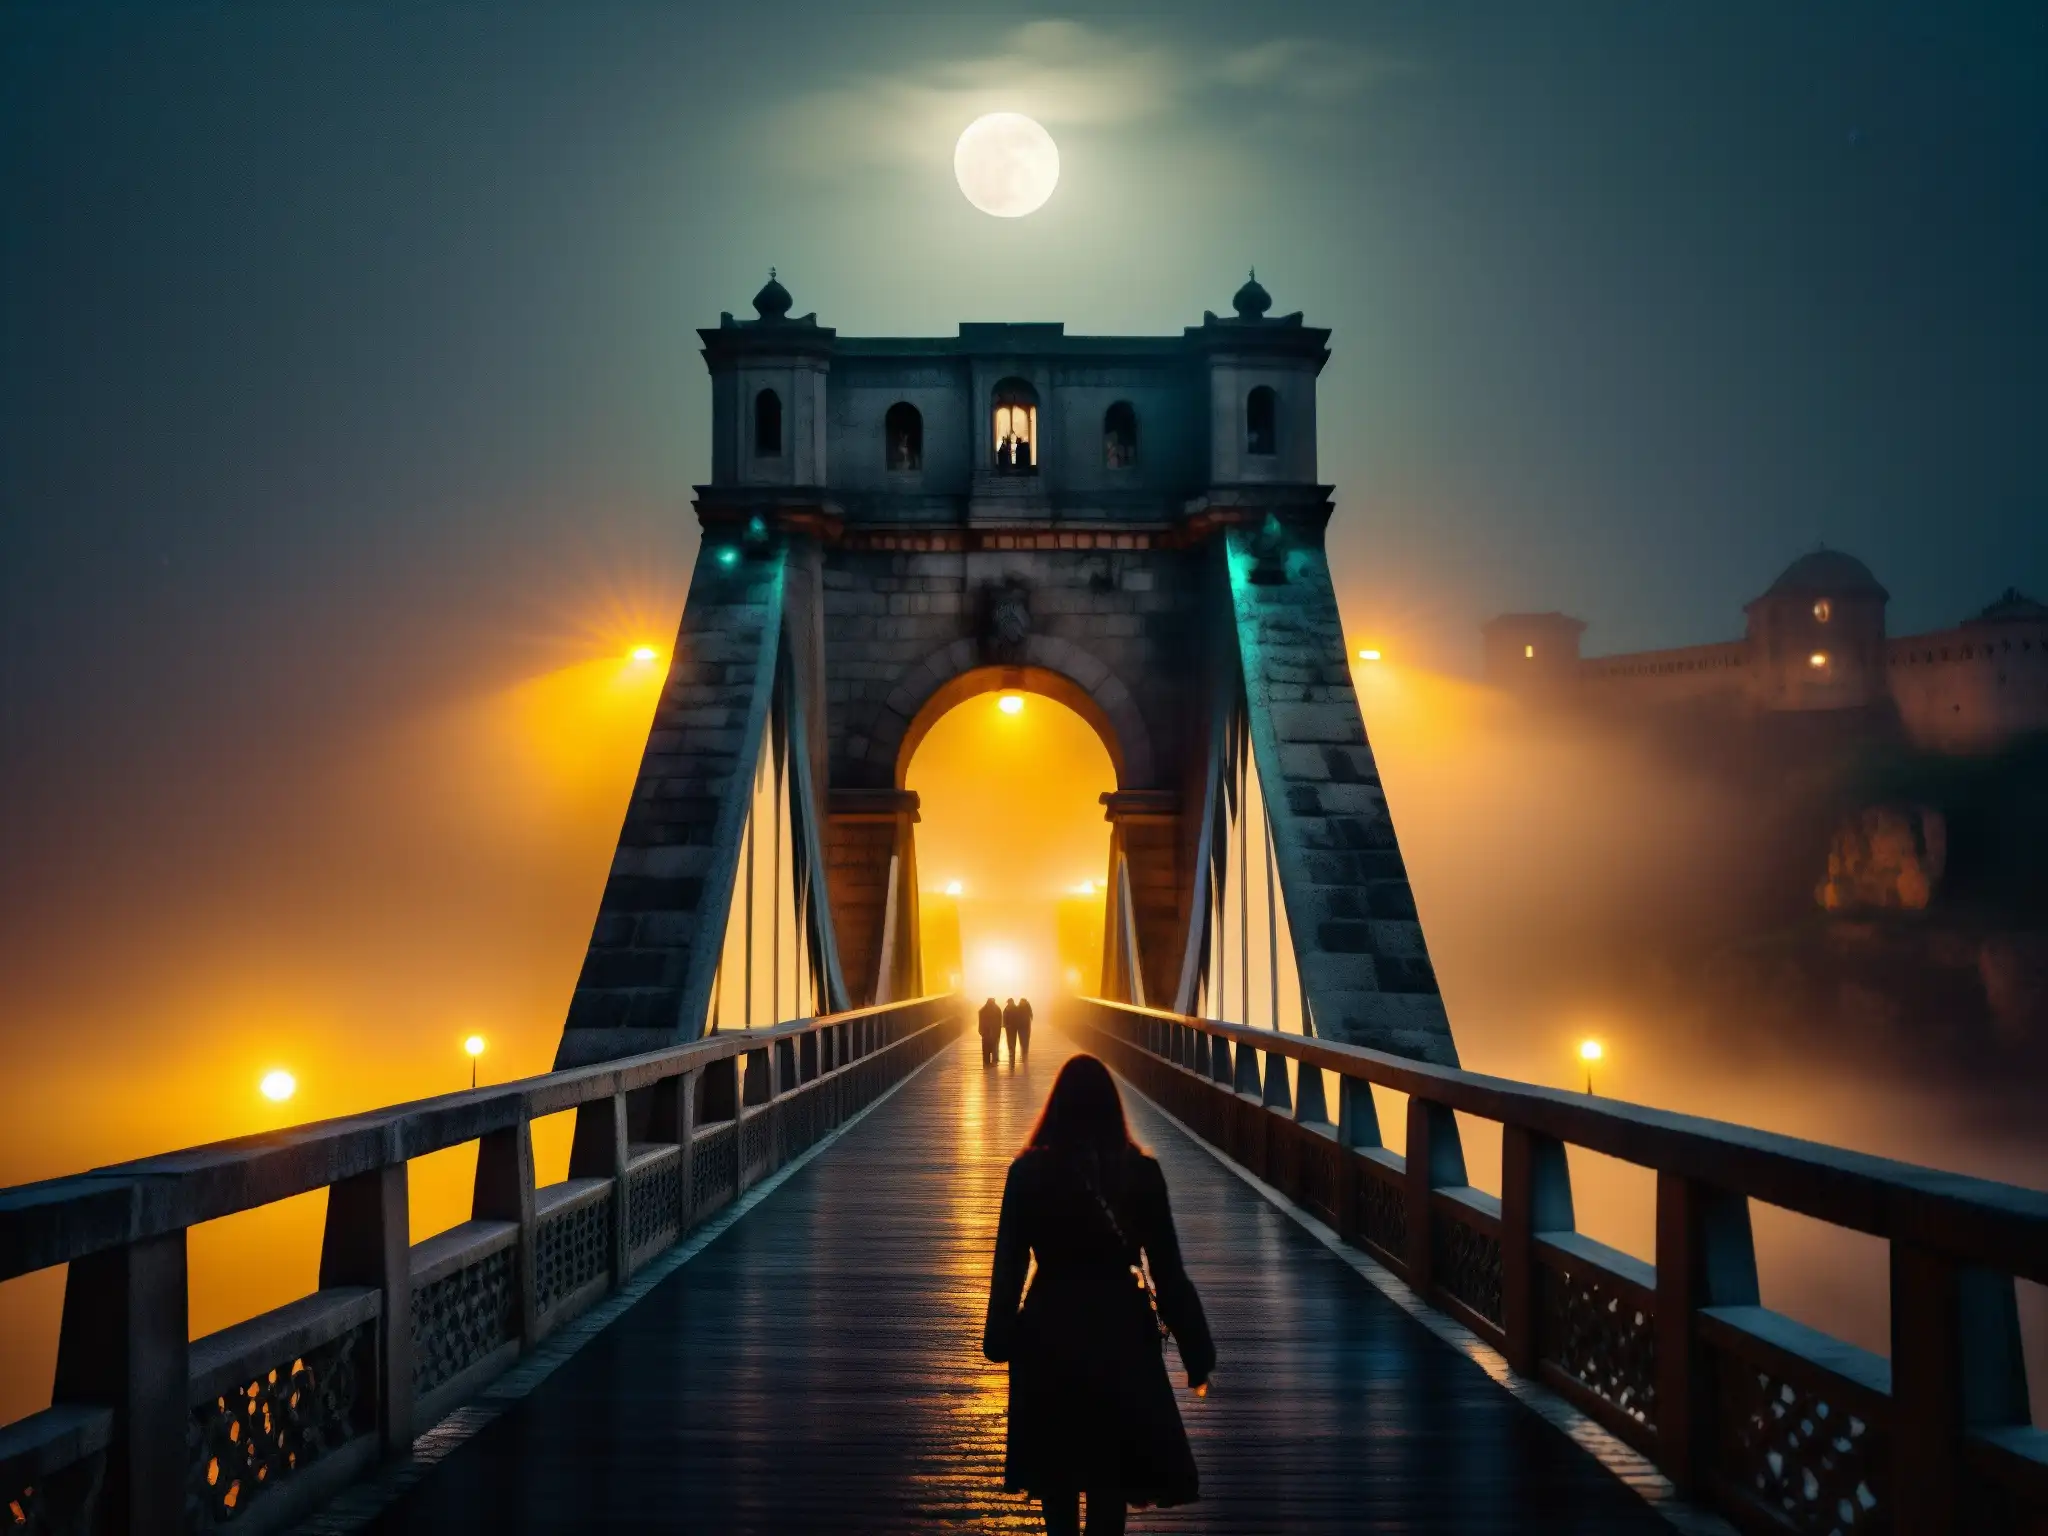 Vista nocturna del Puente de la Muerte en Chennai con actividad paranormal y una atmósfera misteriosa y embrujada